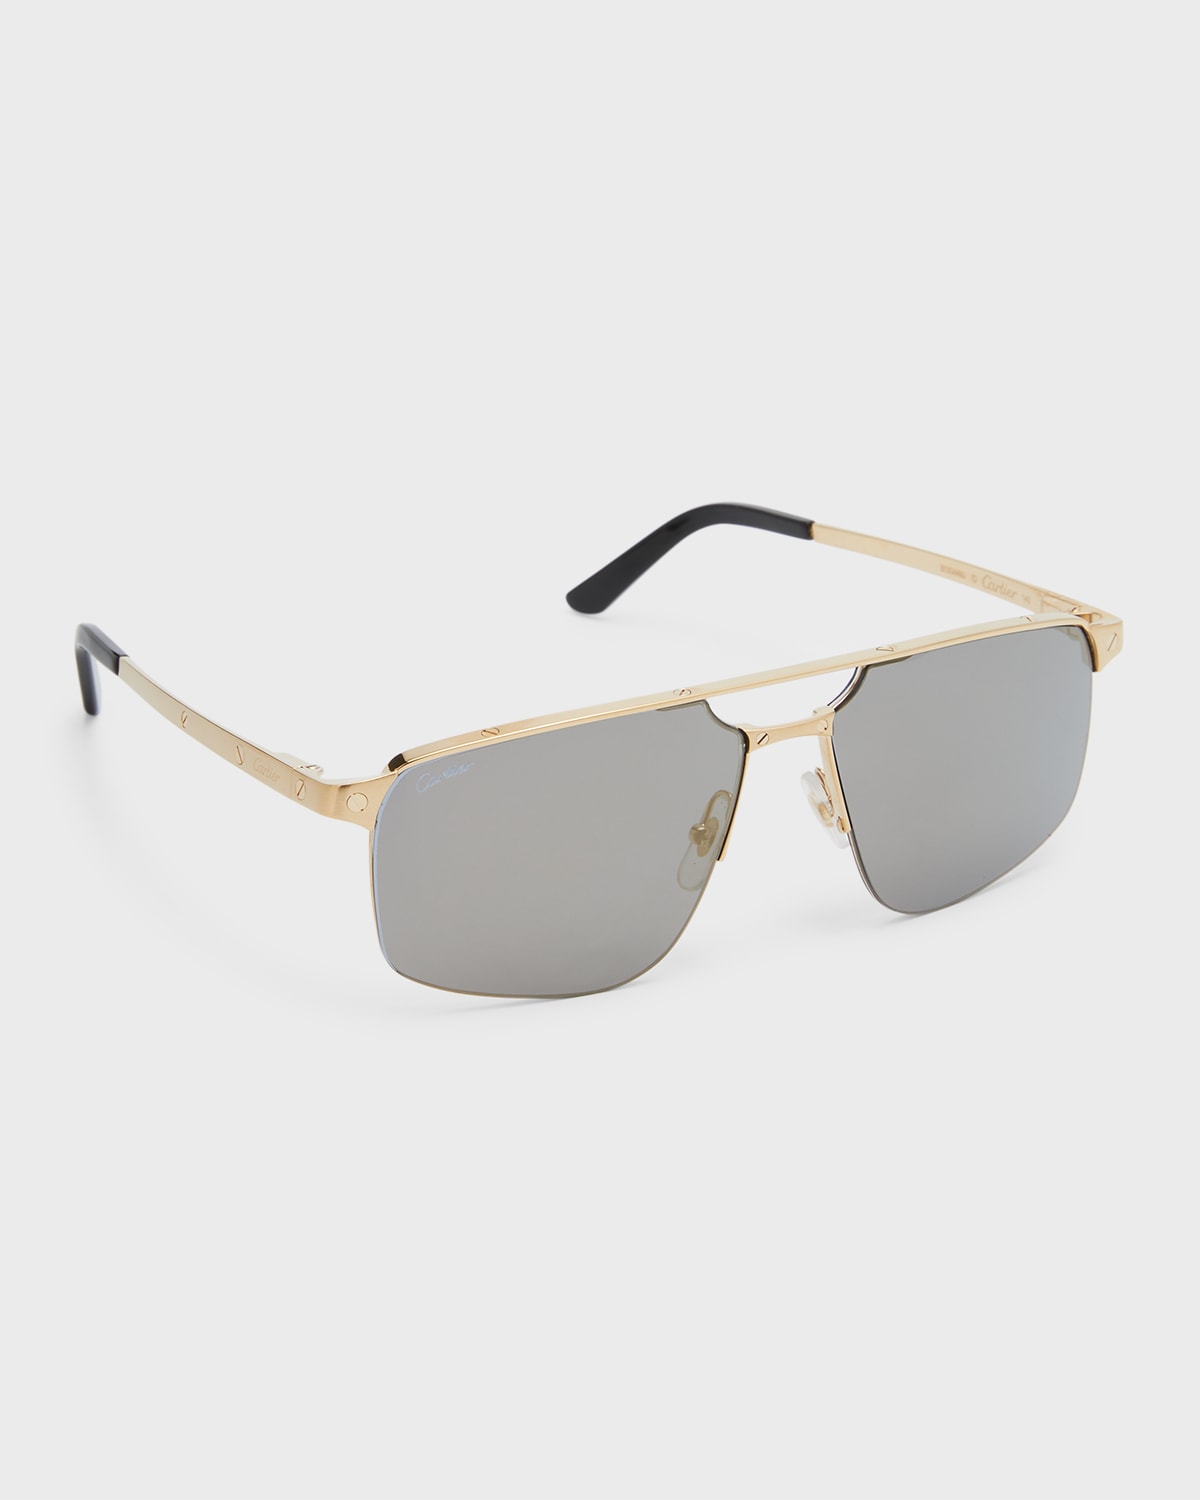 Men's Square Rimless Metal Sunglasses